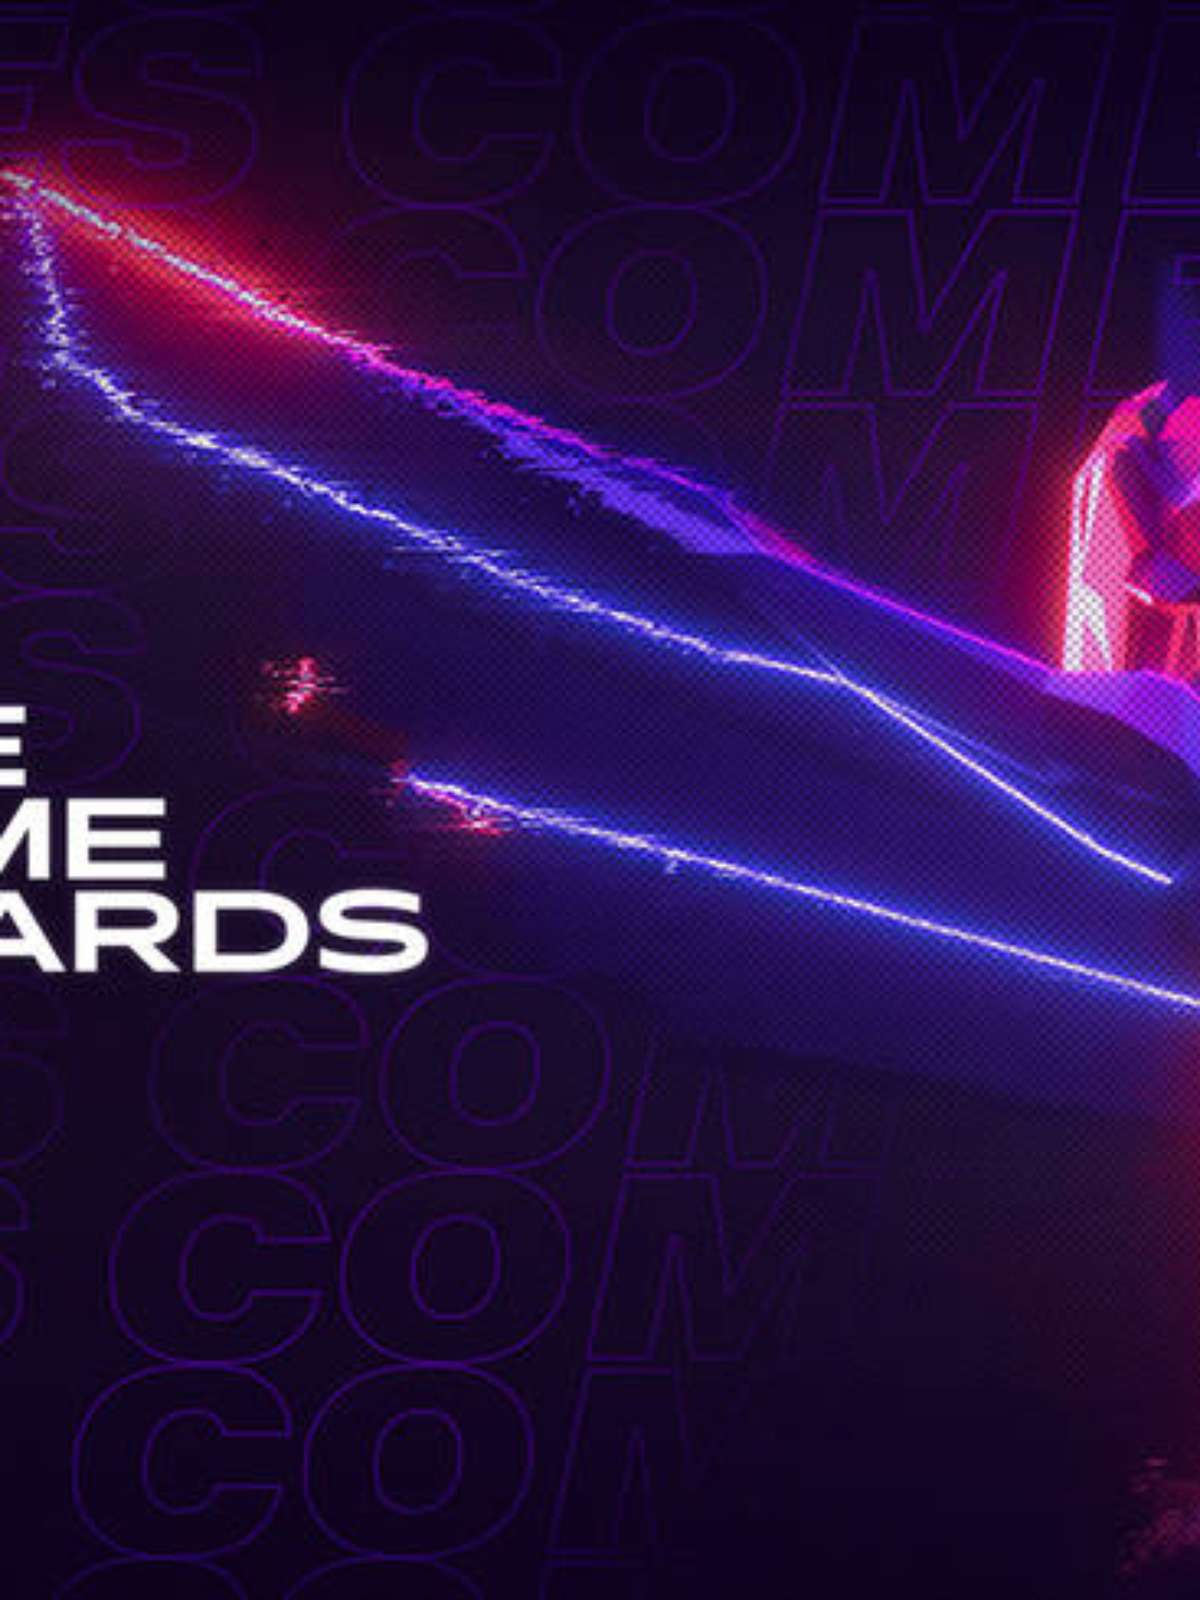 Sekiro é eleito 'Jogo do Ano' no The Game Awards 2019; veja vencedores